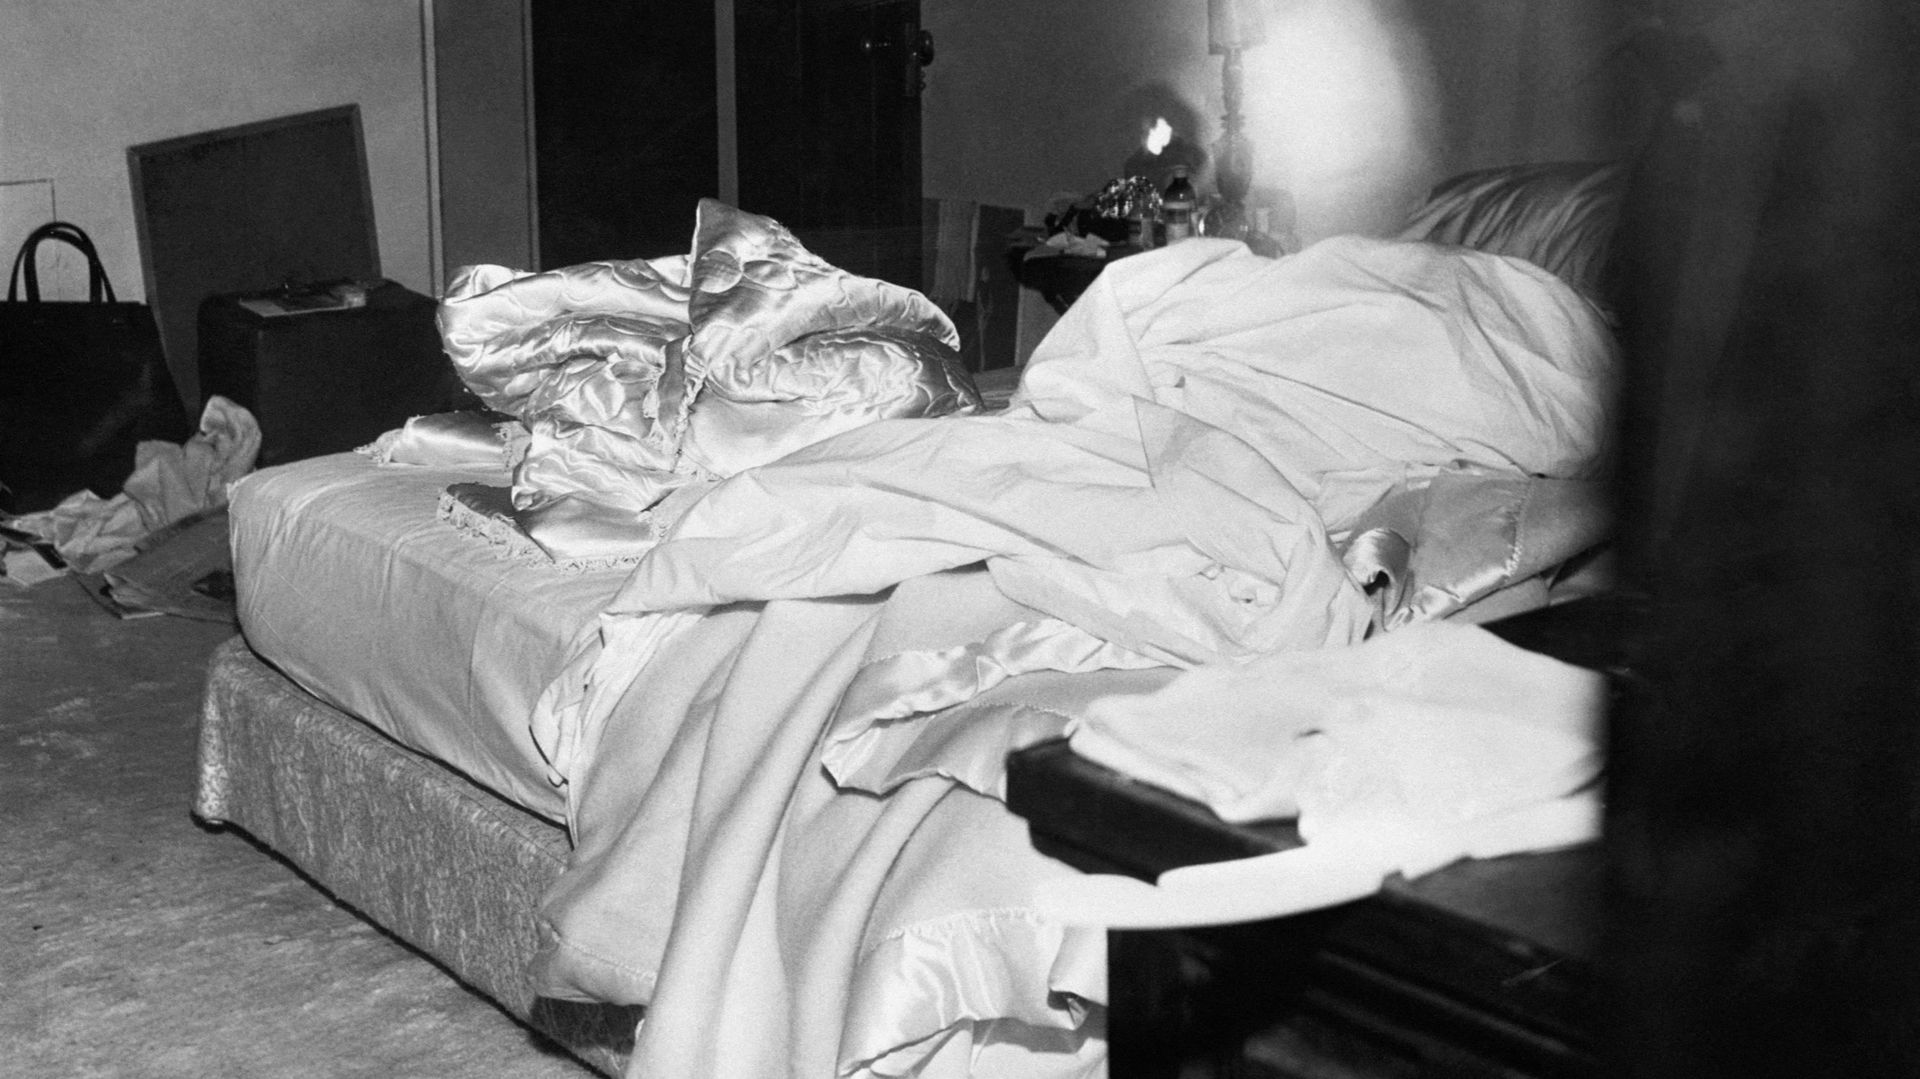 Photo du lit où Marilyn Monroe fut retrouvée morte le 5 août 1962, dans sa maison de Brentwood, à Los Angeles.